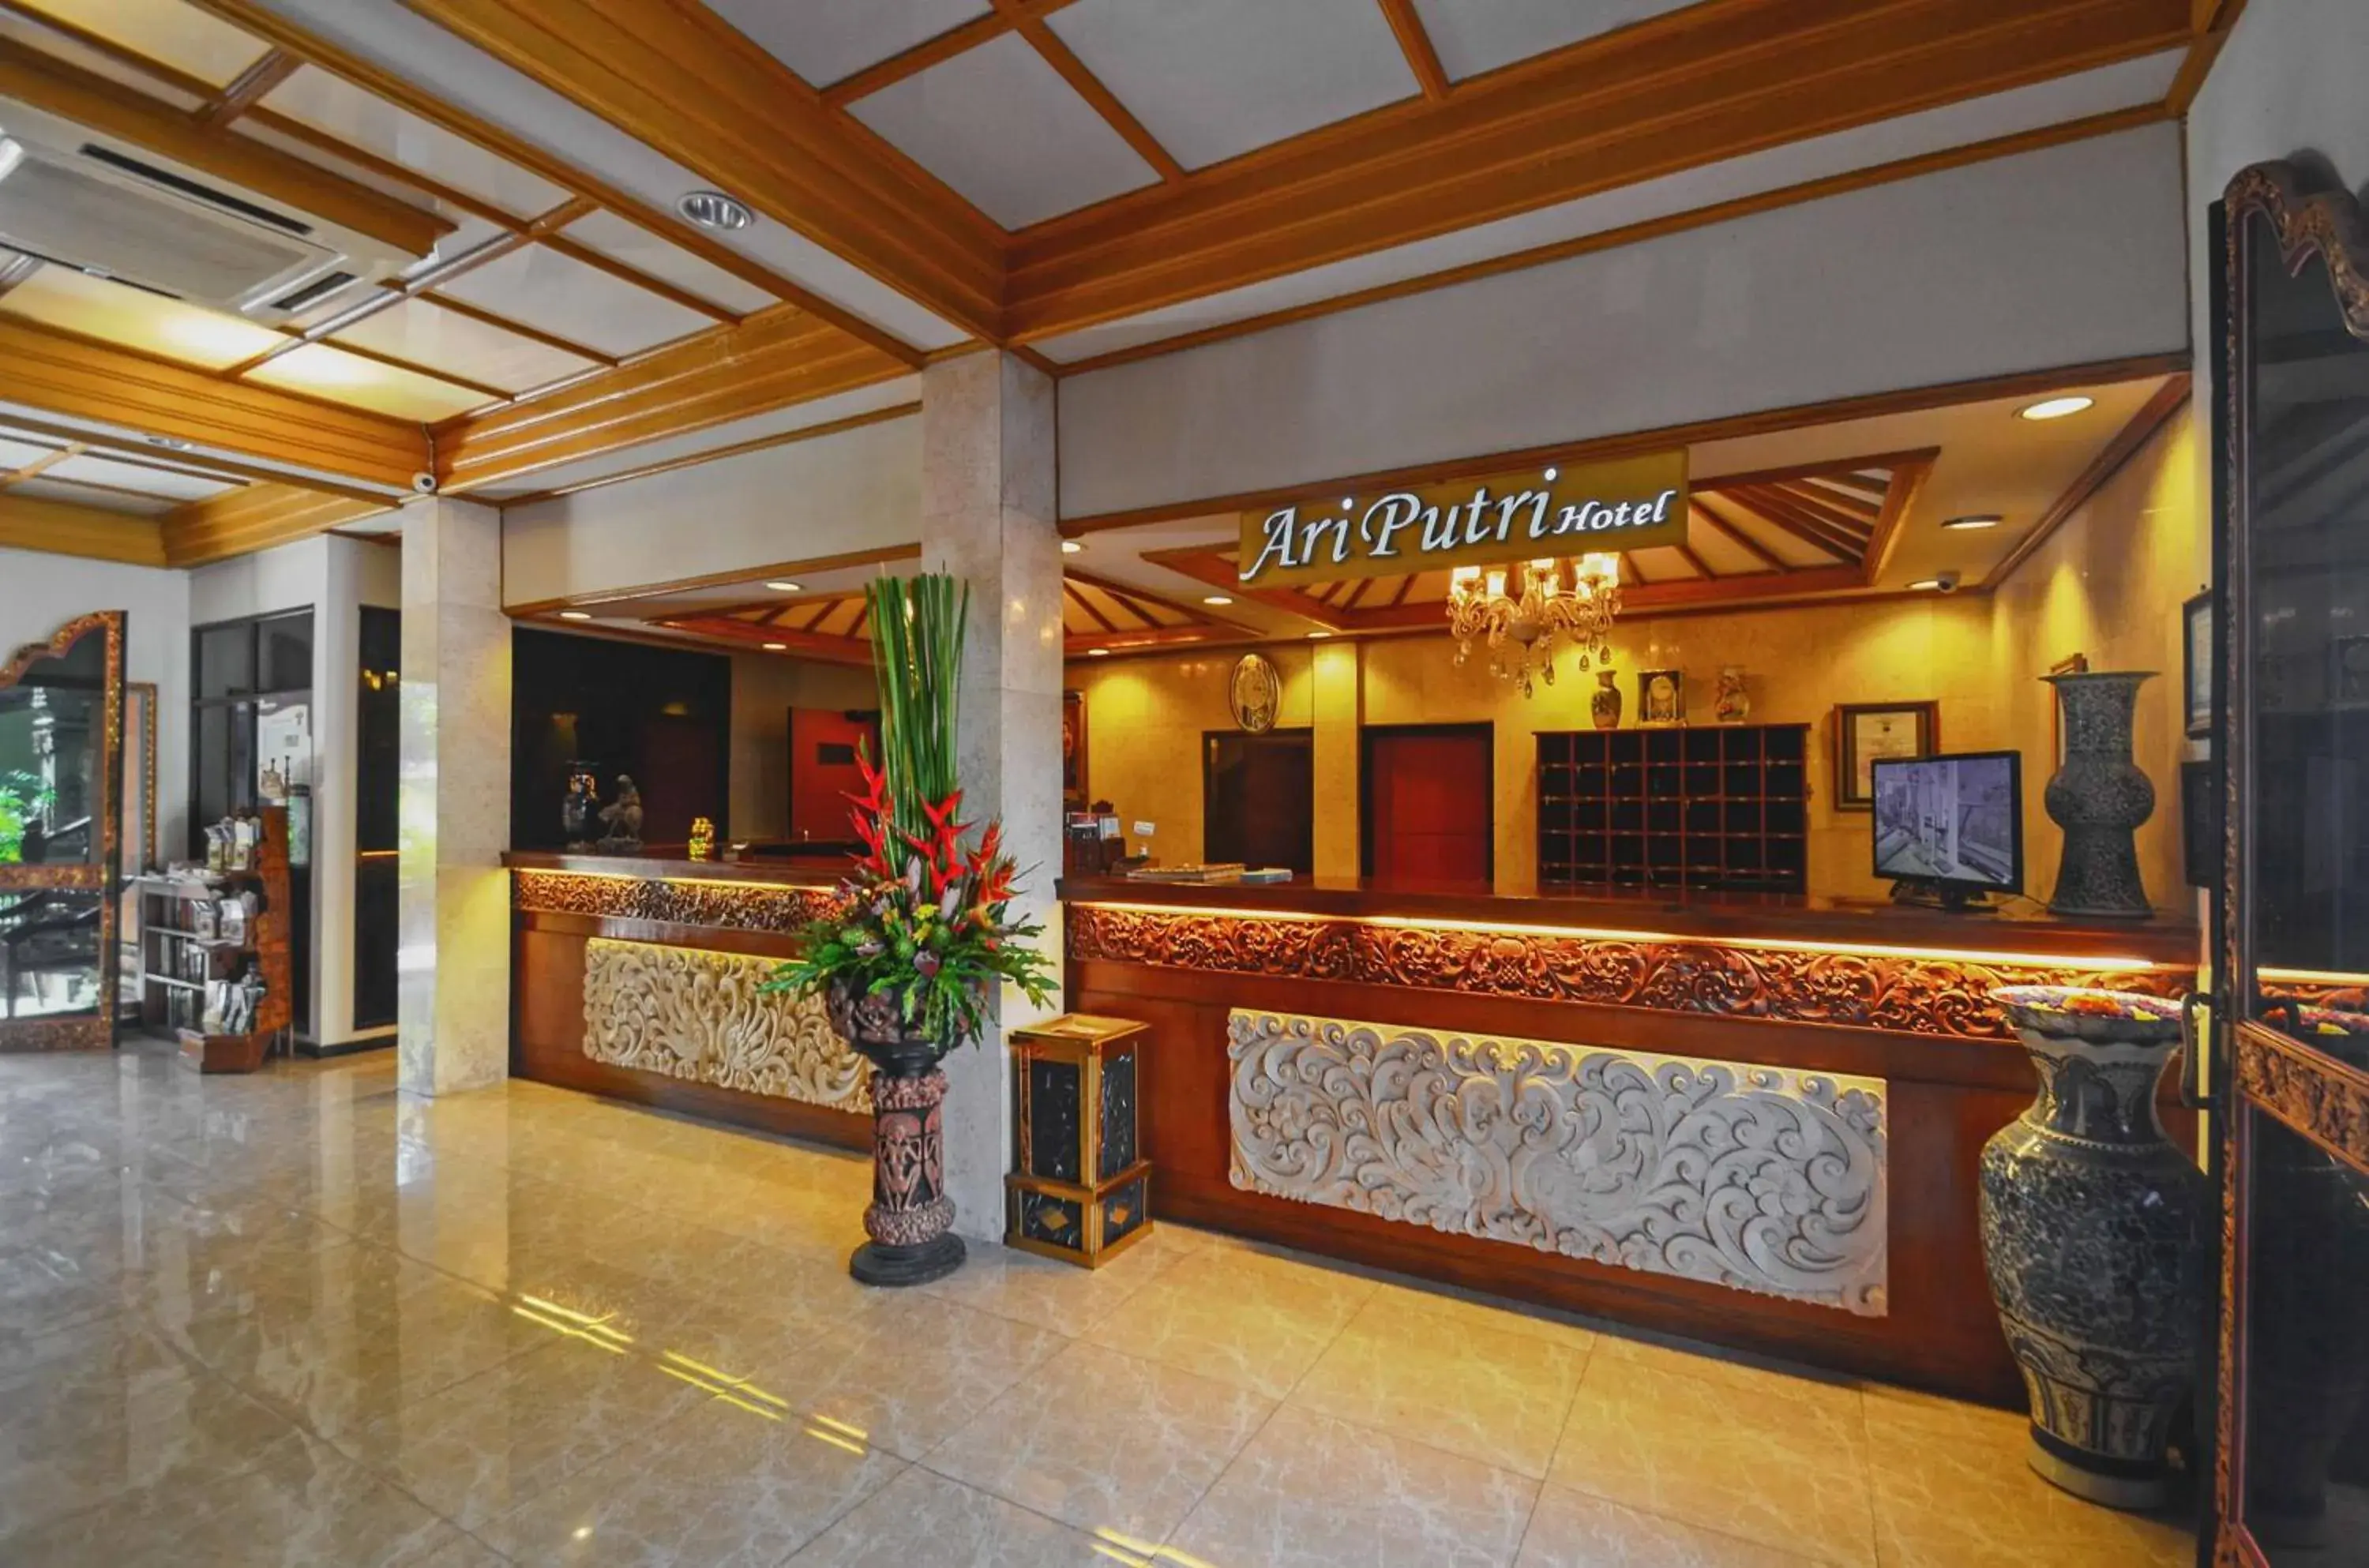 Lobby or reception, Lobby/Reception in Ari Putri Hotel